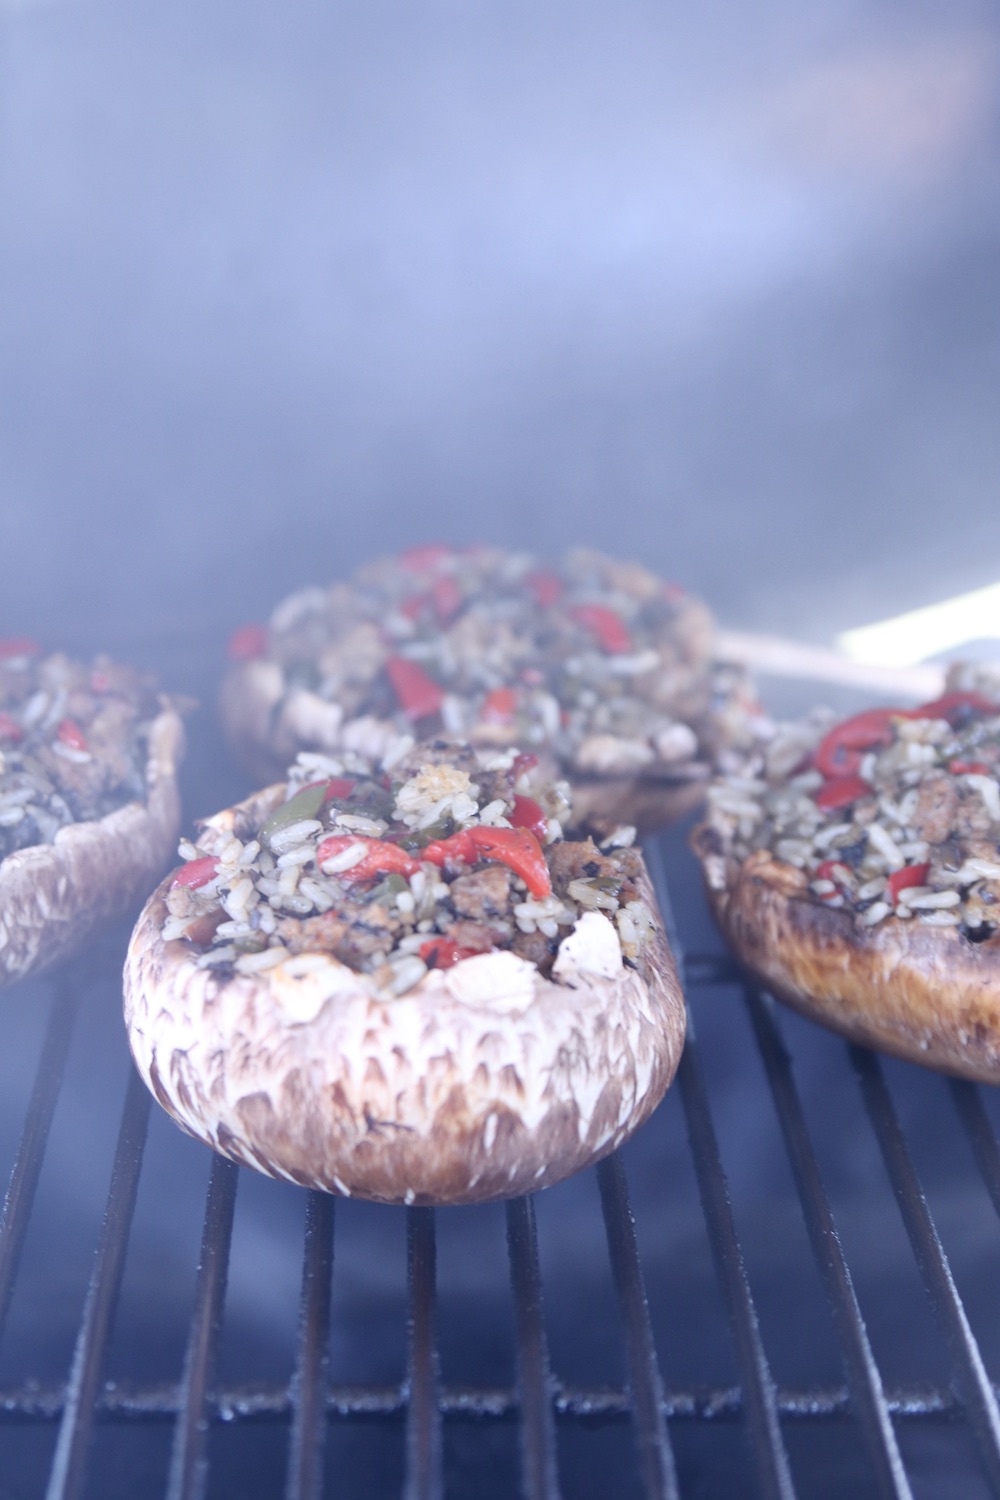 stuffed mushrooms on a grill 